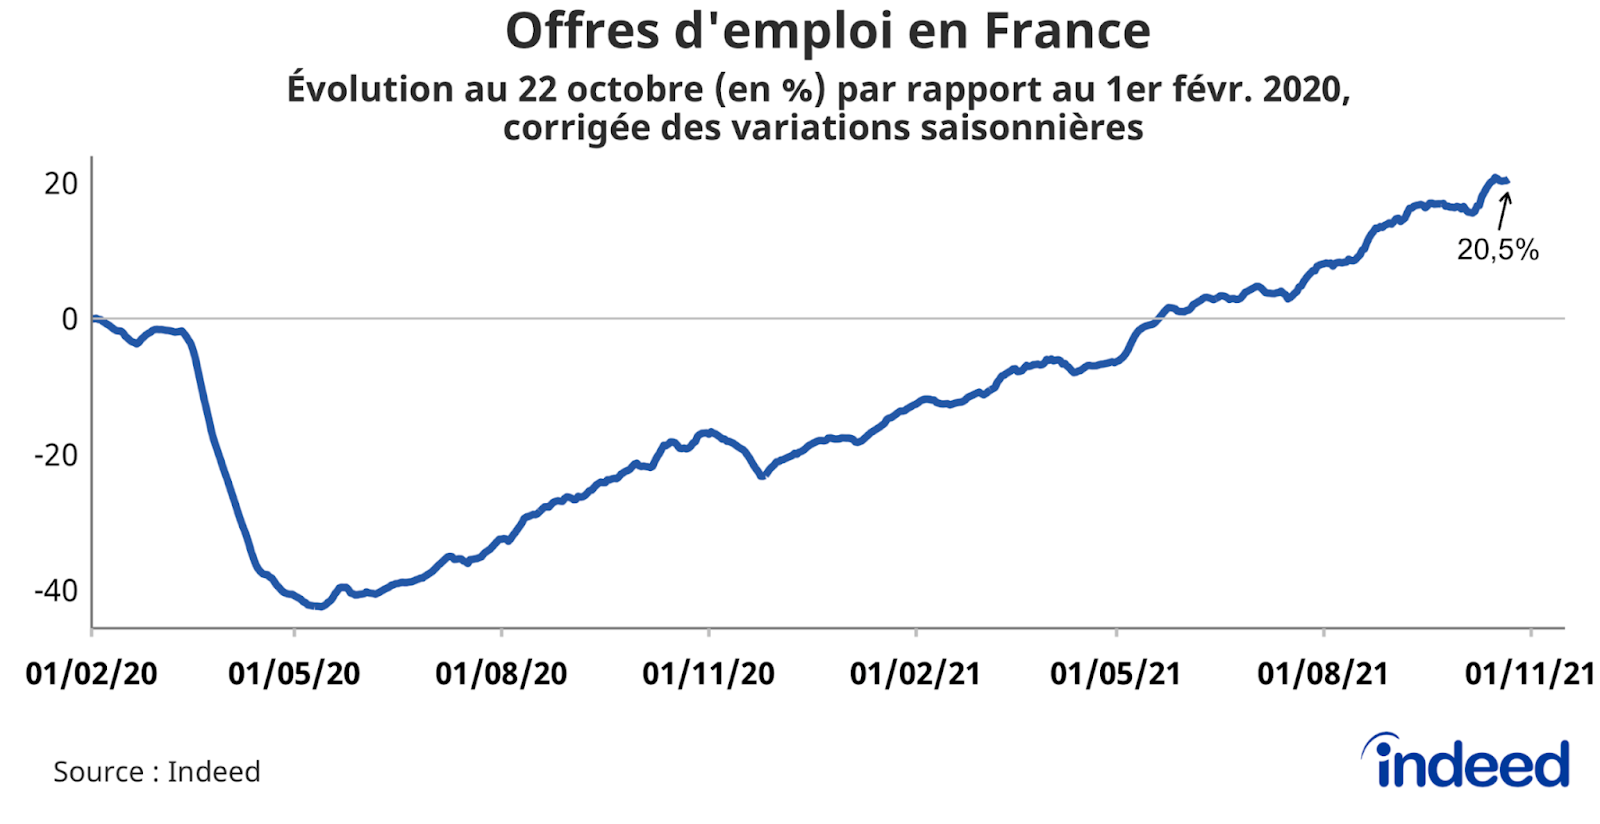 Le graphique en courbes illustre l’évolution en pourcentage des offres d’emploi en France au 22 octobre 2021